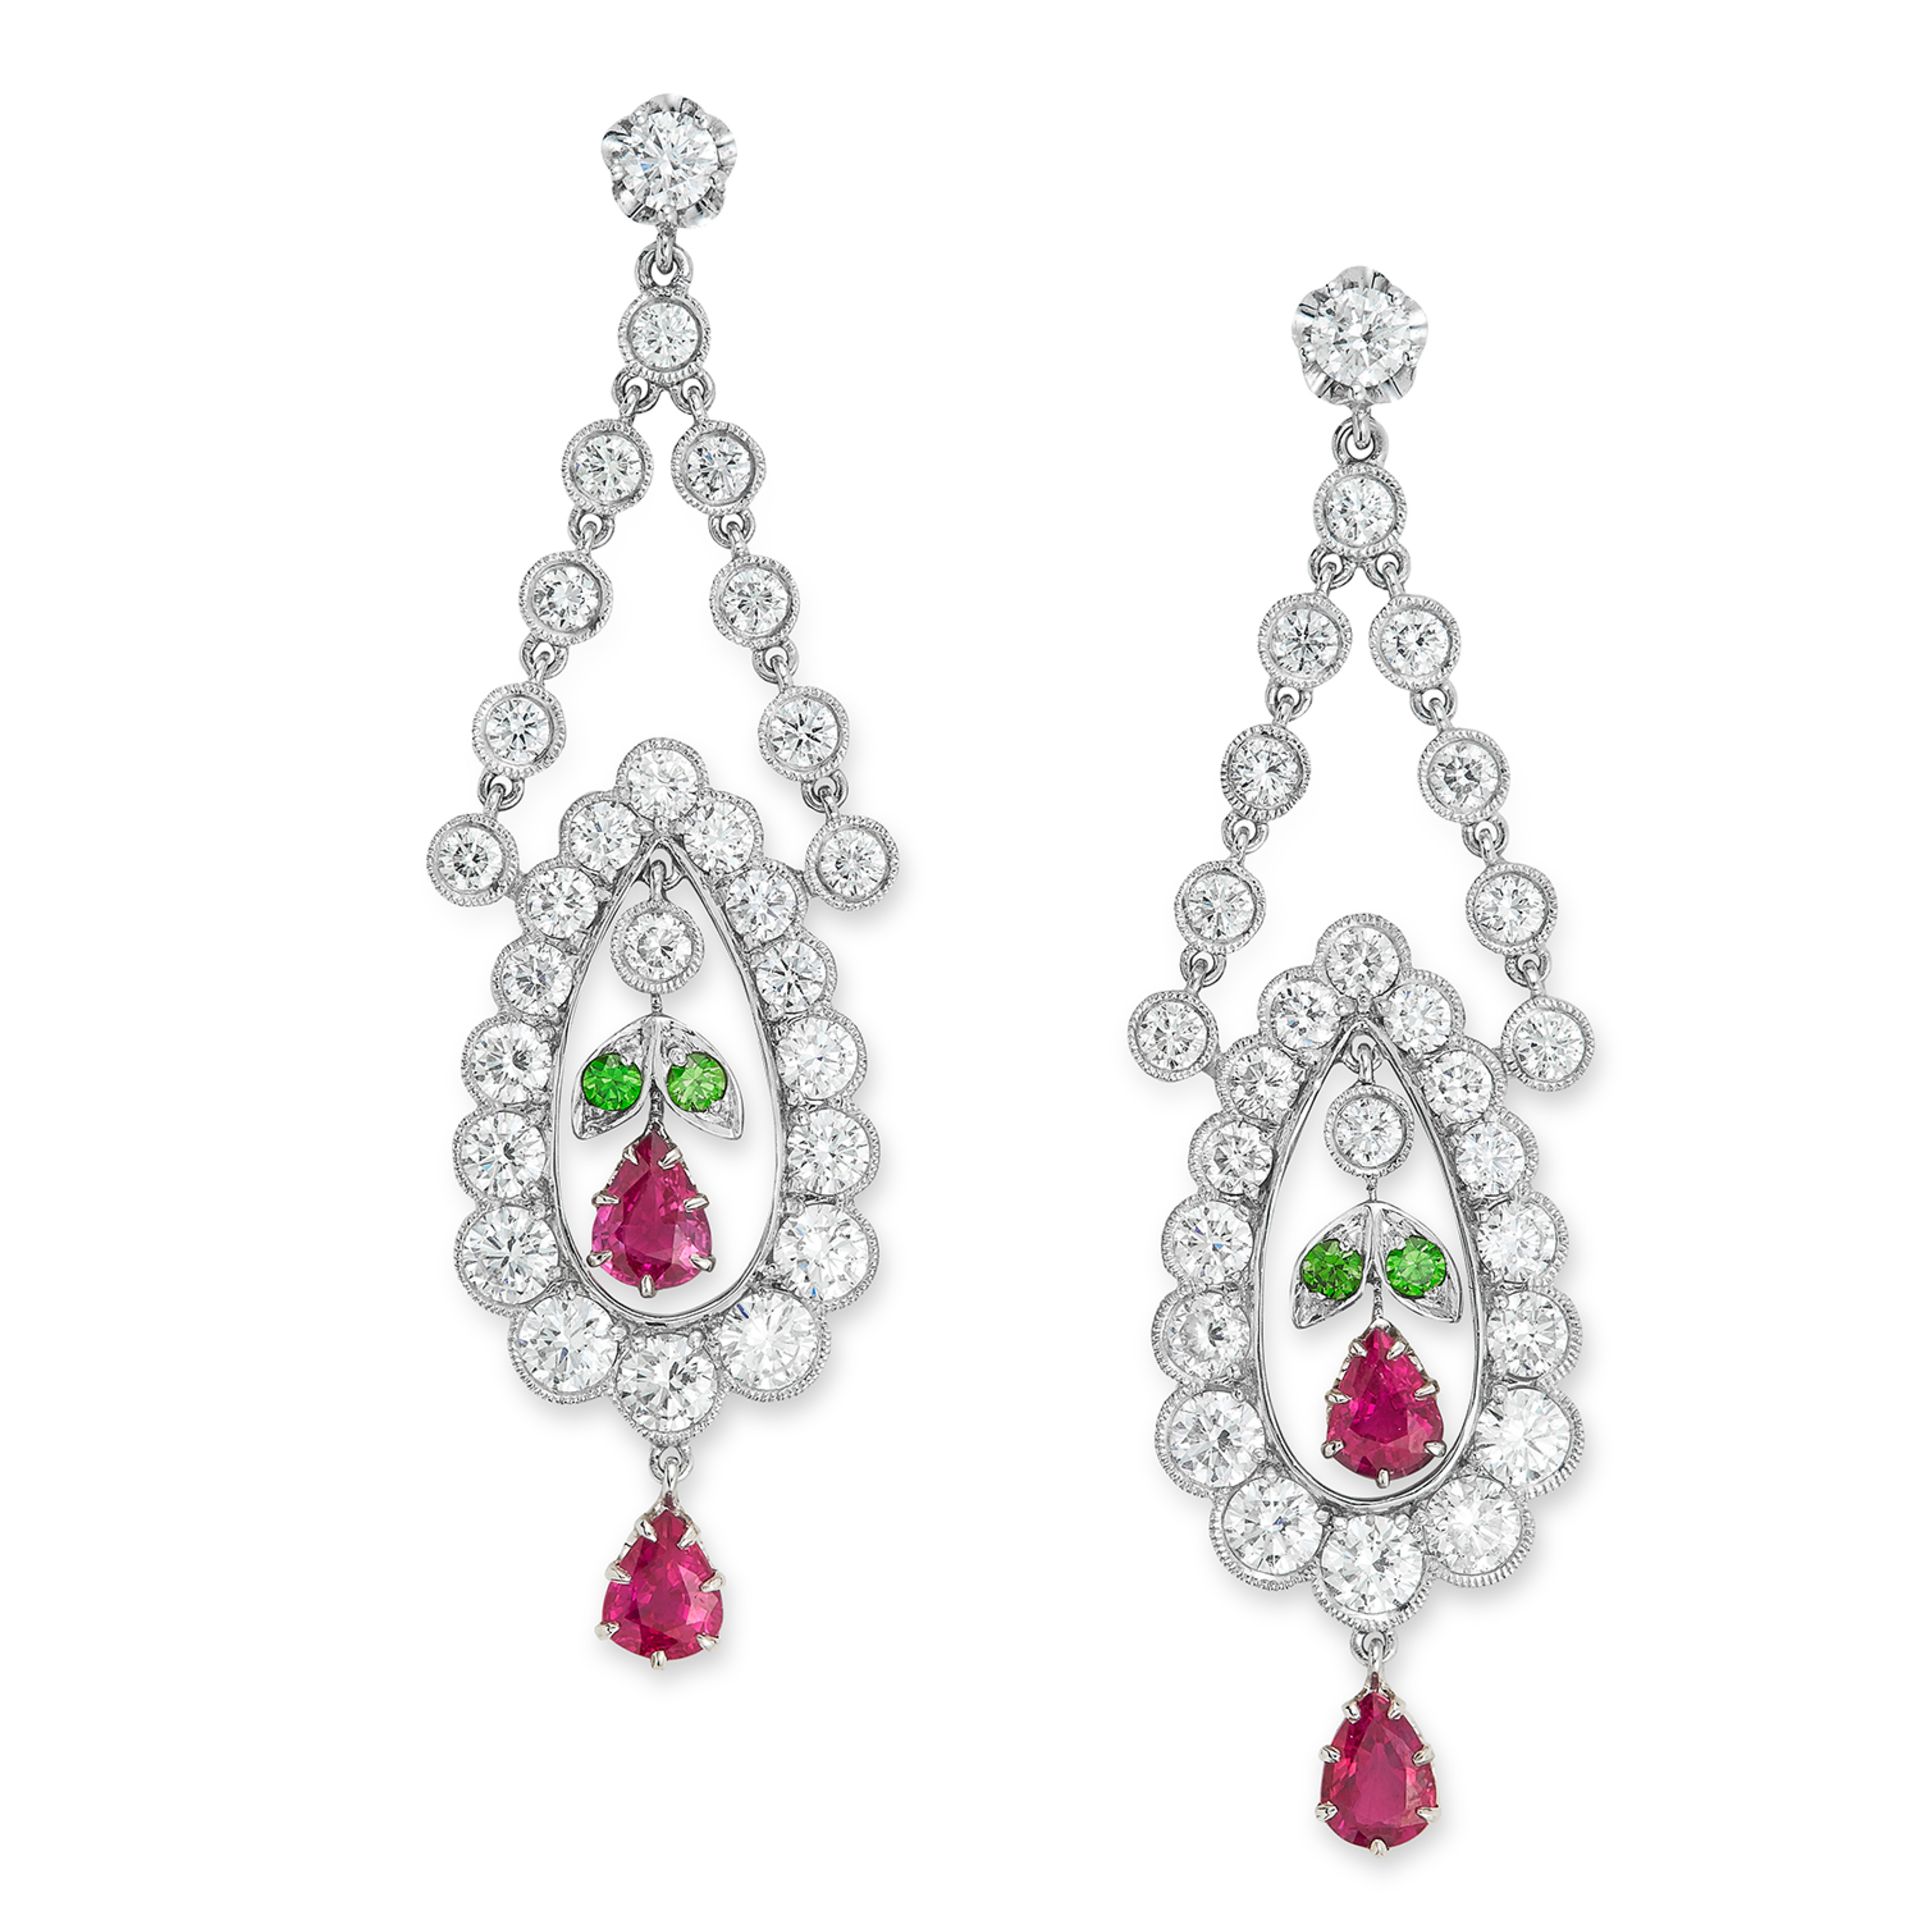 DIAMOND, RUBY AND DEMANTOID GARNET DROP EARRINGS set with pear cut rubies, round cut demantoid